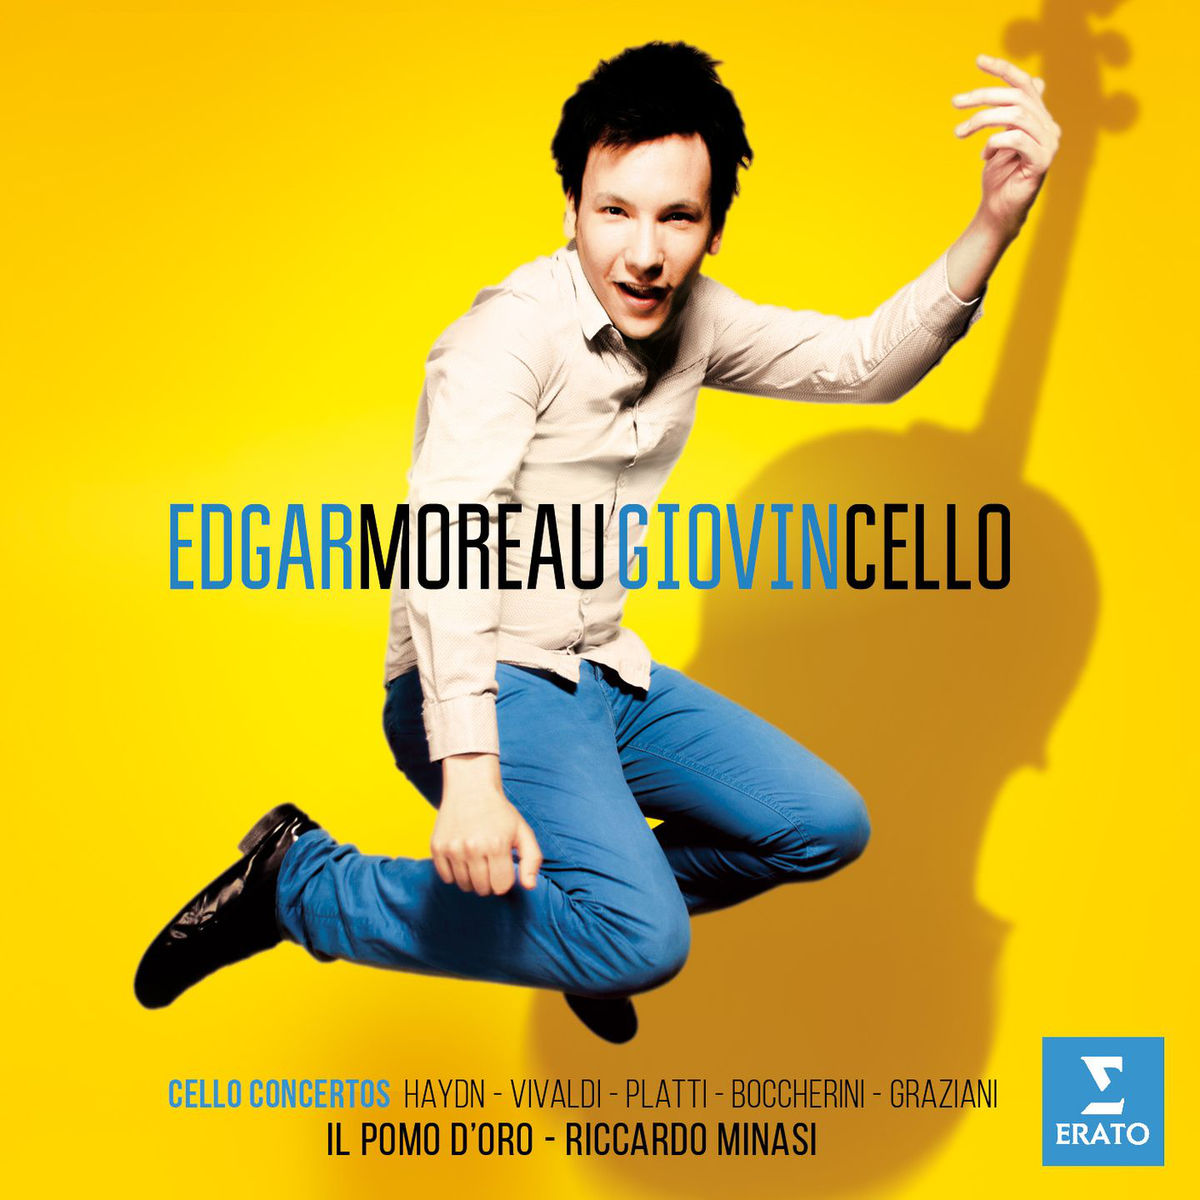 Edgar Moreau, Il Pomo d’Oro & Riccardo Minasi - Giovincello (2015) [Qobuz FLAC 24bit/96kHz]